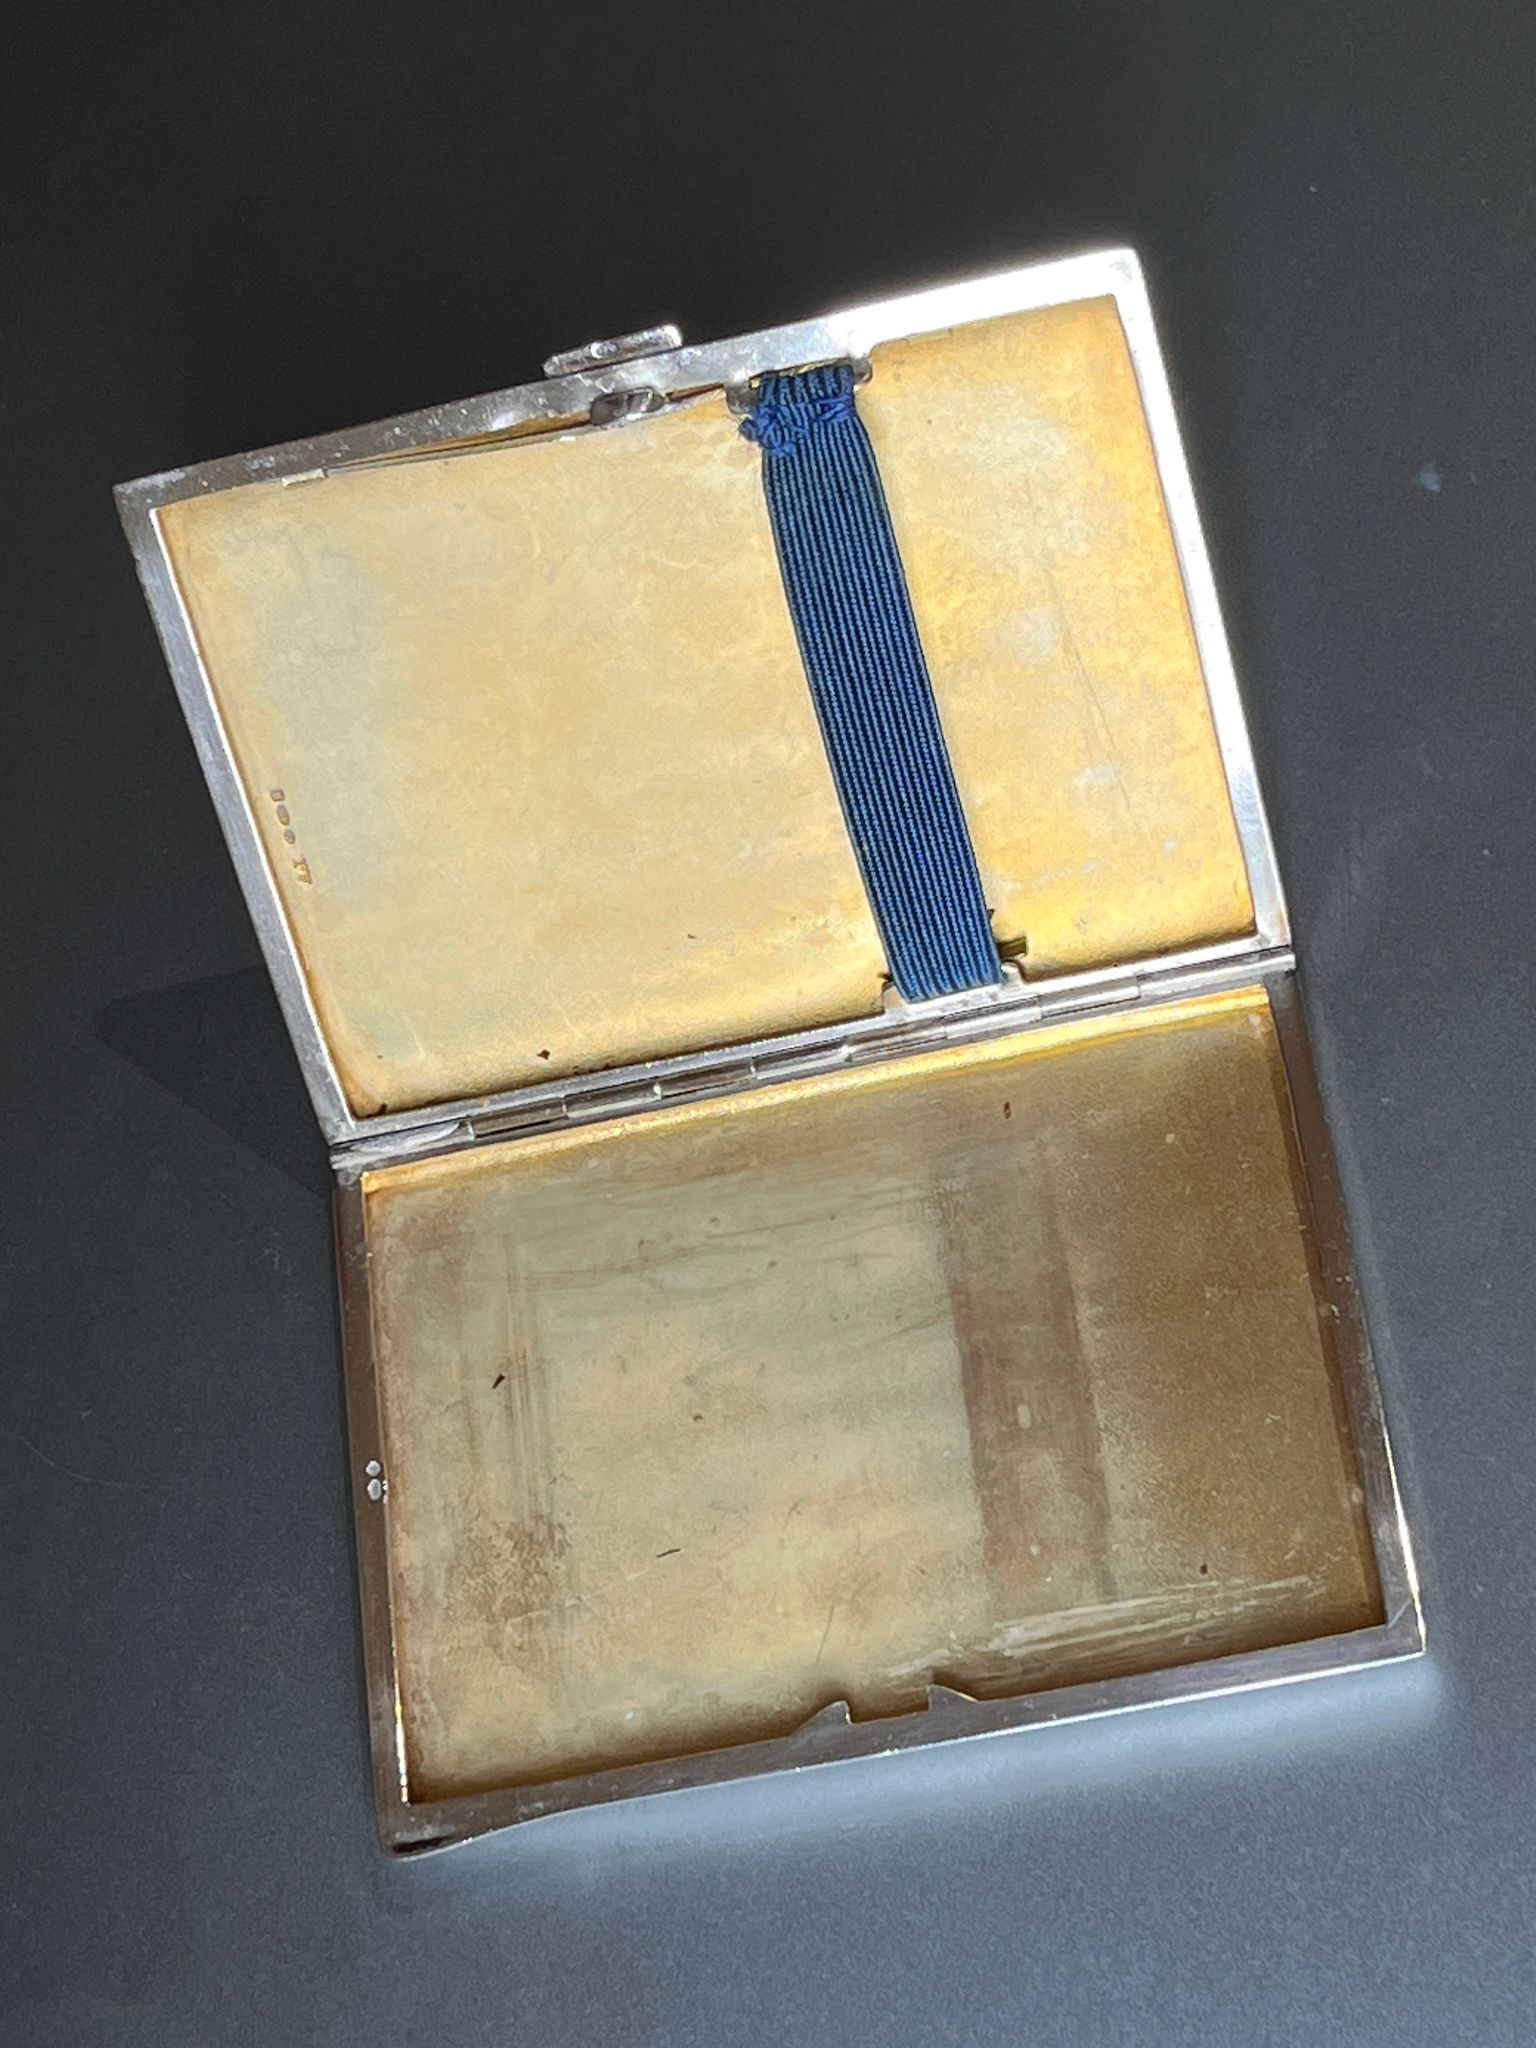 Art deco guilloche enamel cigarette case 8cm by 6cm - Image 3 of 4